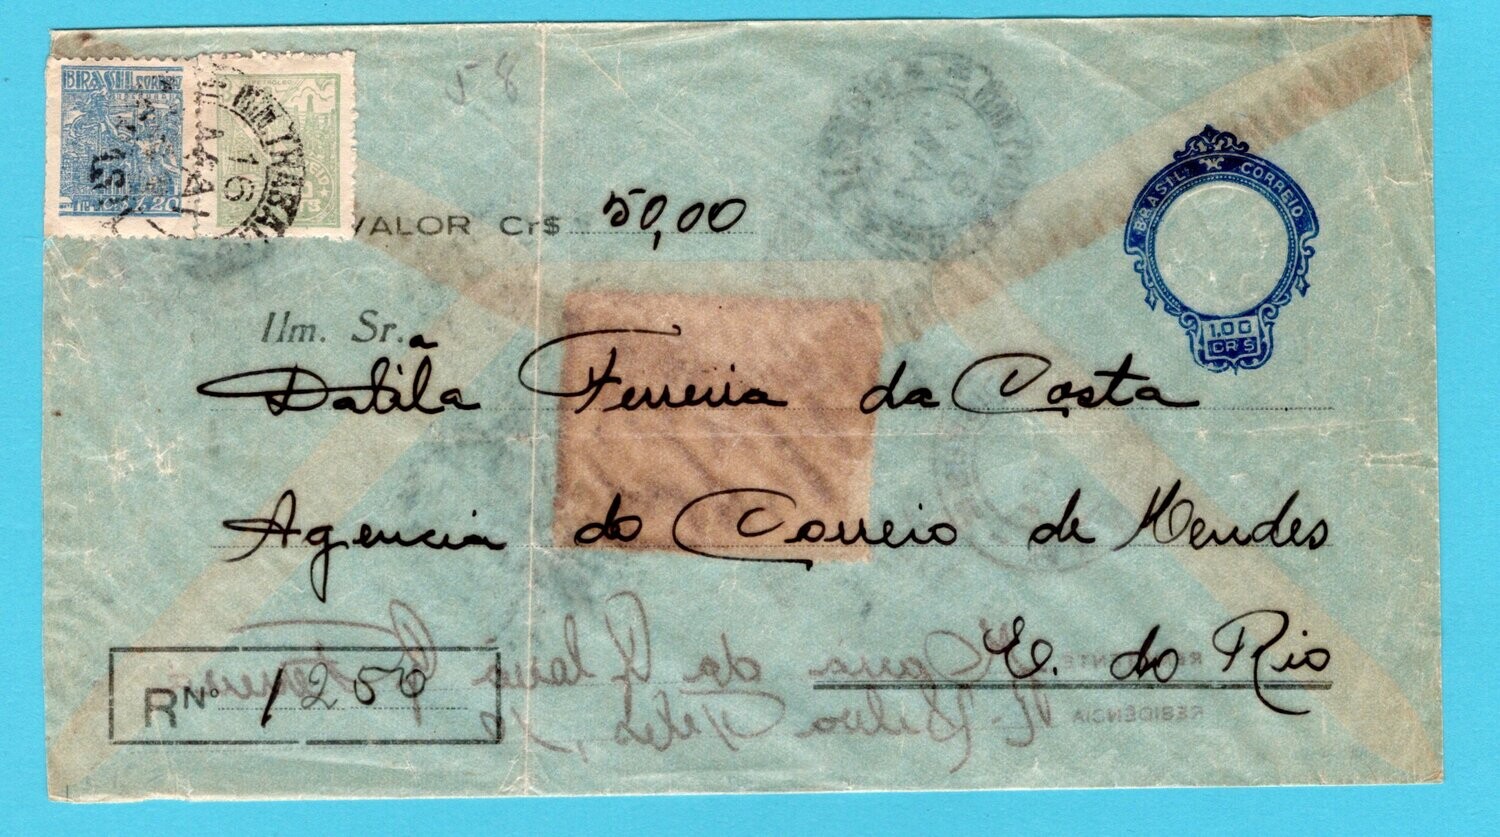 BRAZIL transparent R envelope 1949 for remittance Mendes